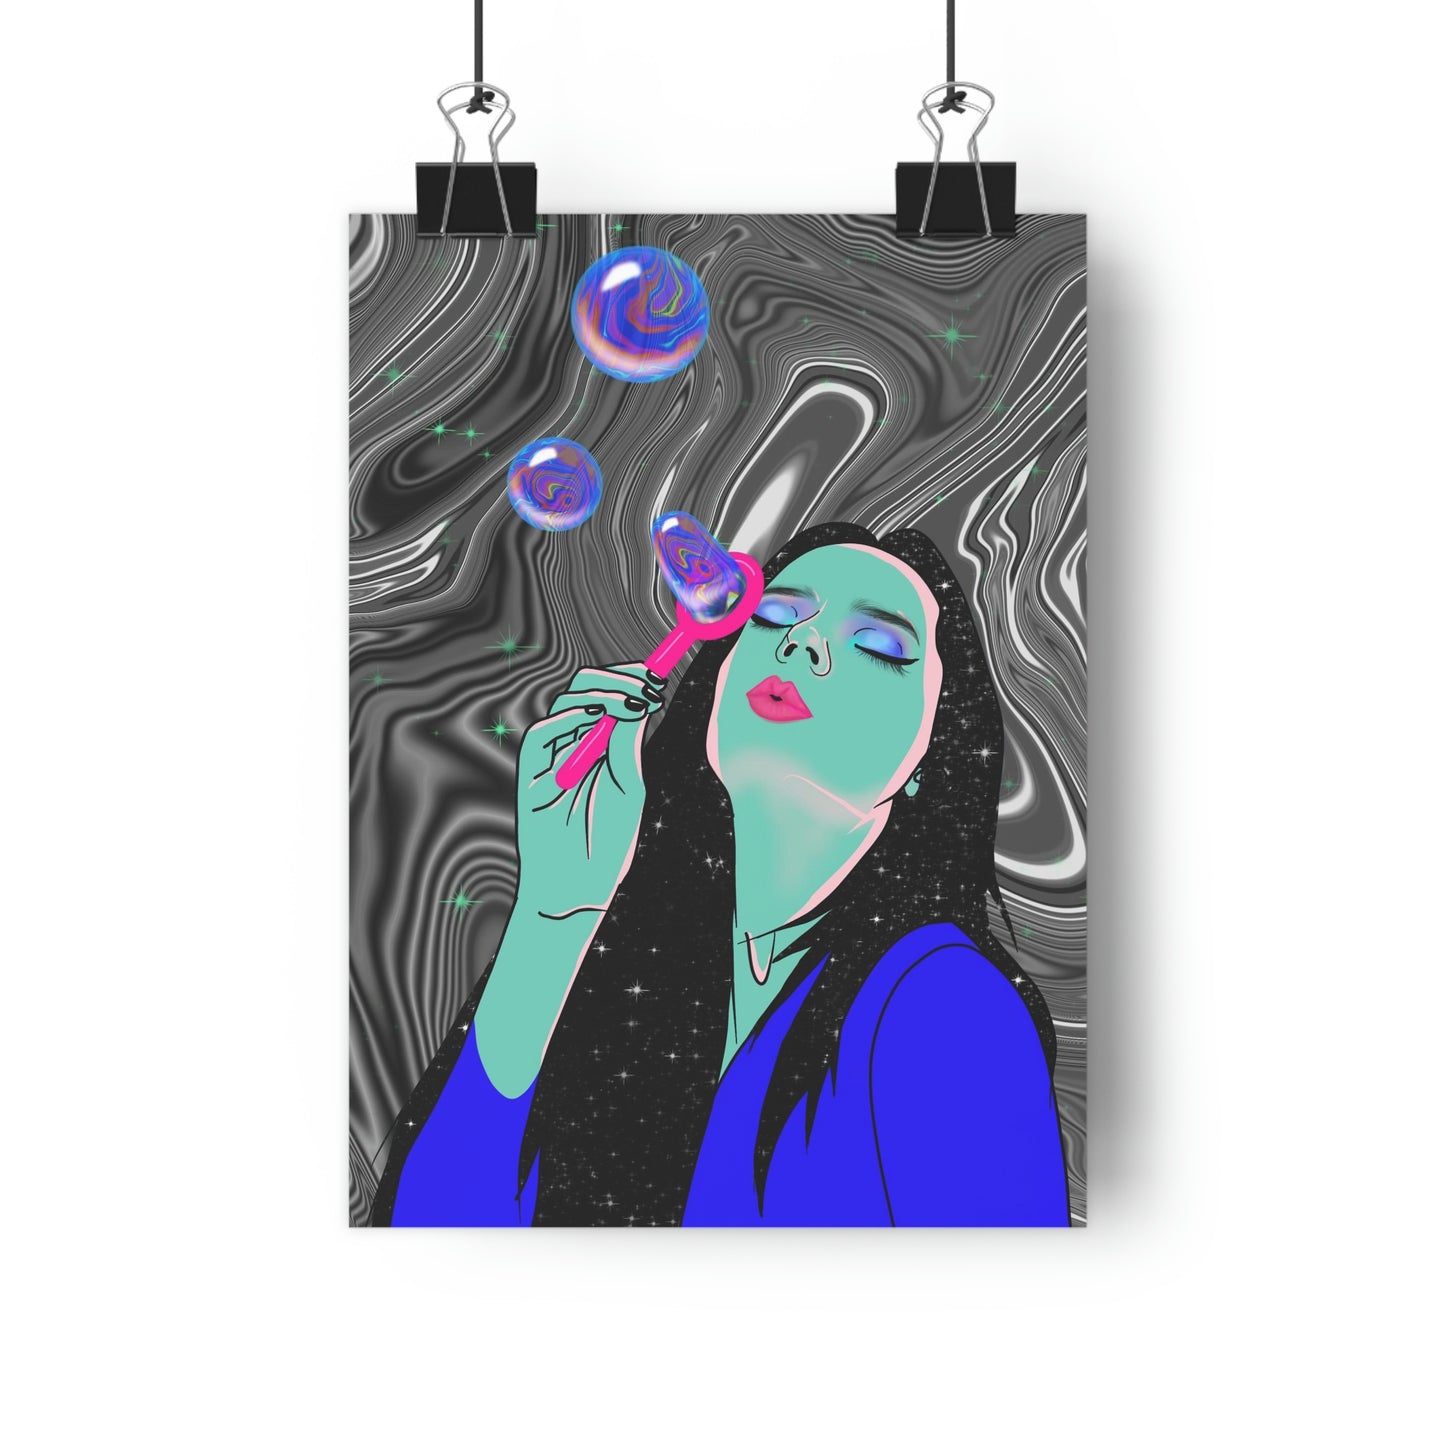 Blowing Bubbles - Giclée Art Print